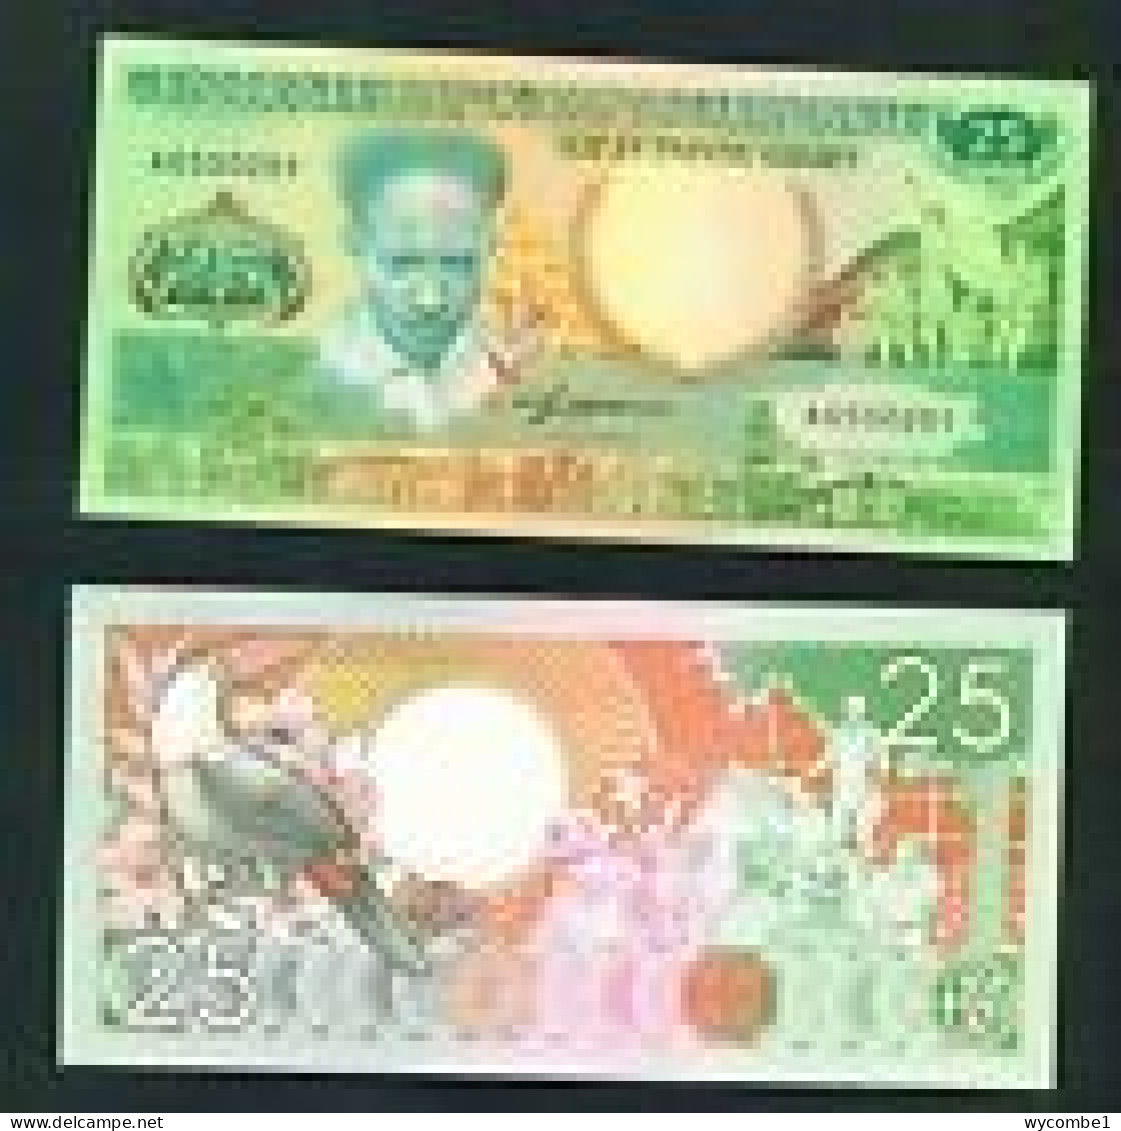 SURINAM - 1988 25 Gulden UNC - Suriname